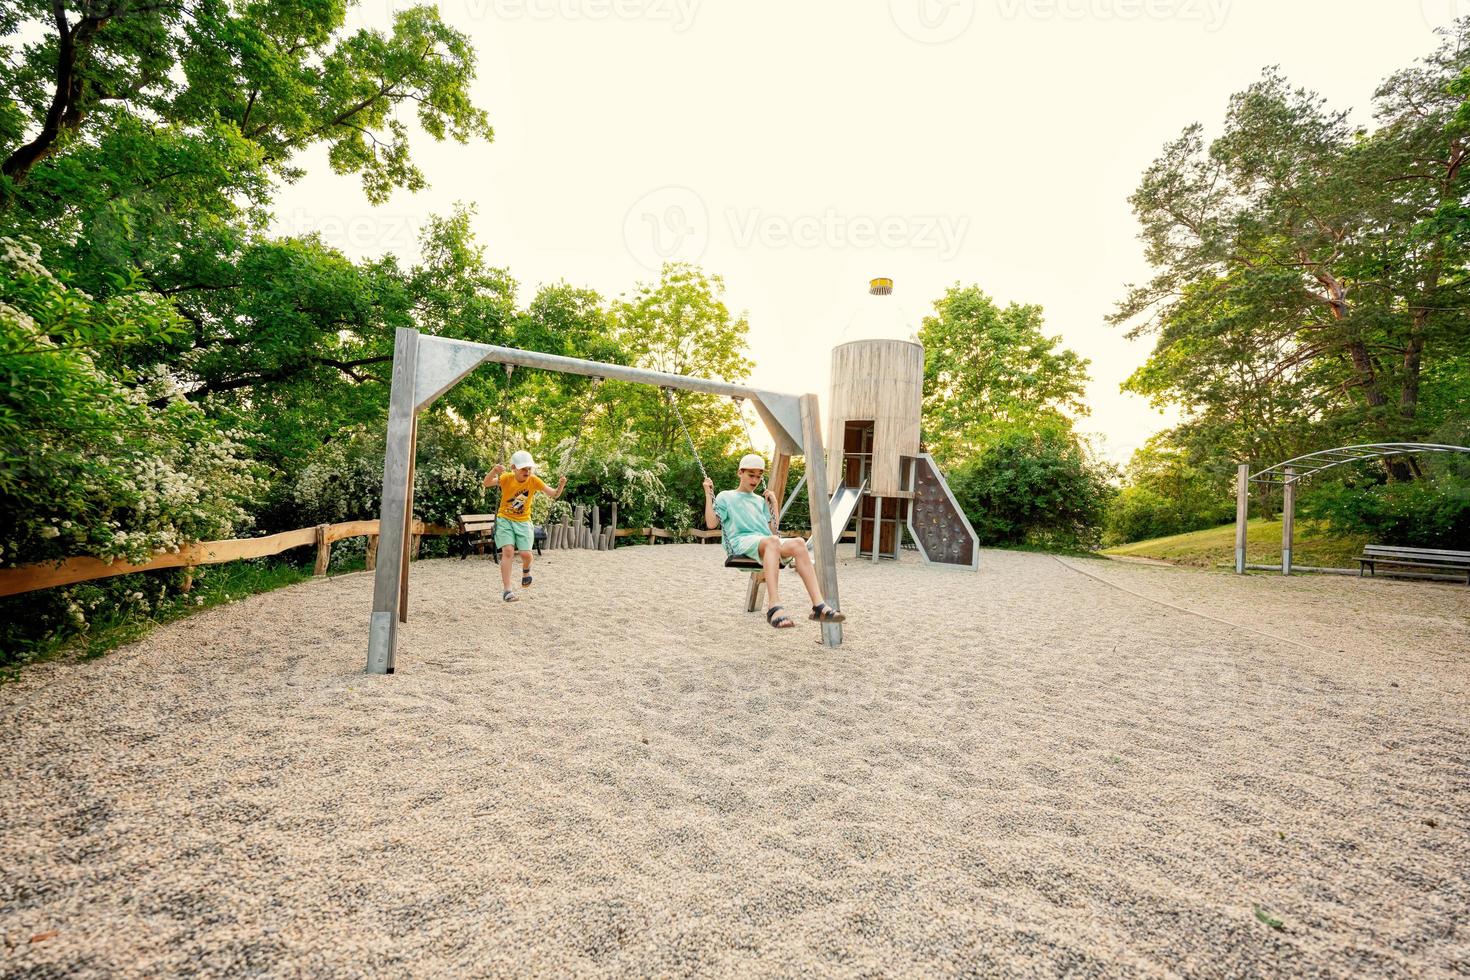 dos hermanos se balancean en un juego de juegos para niños en un parque público. foto